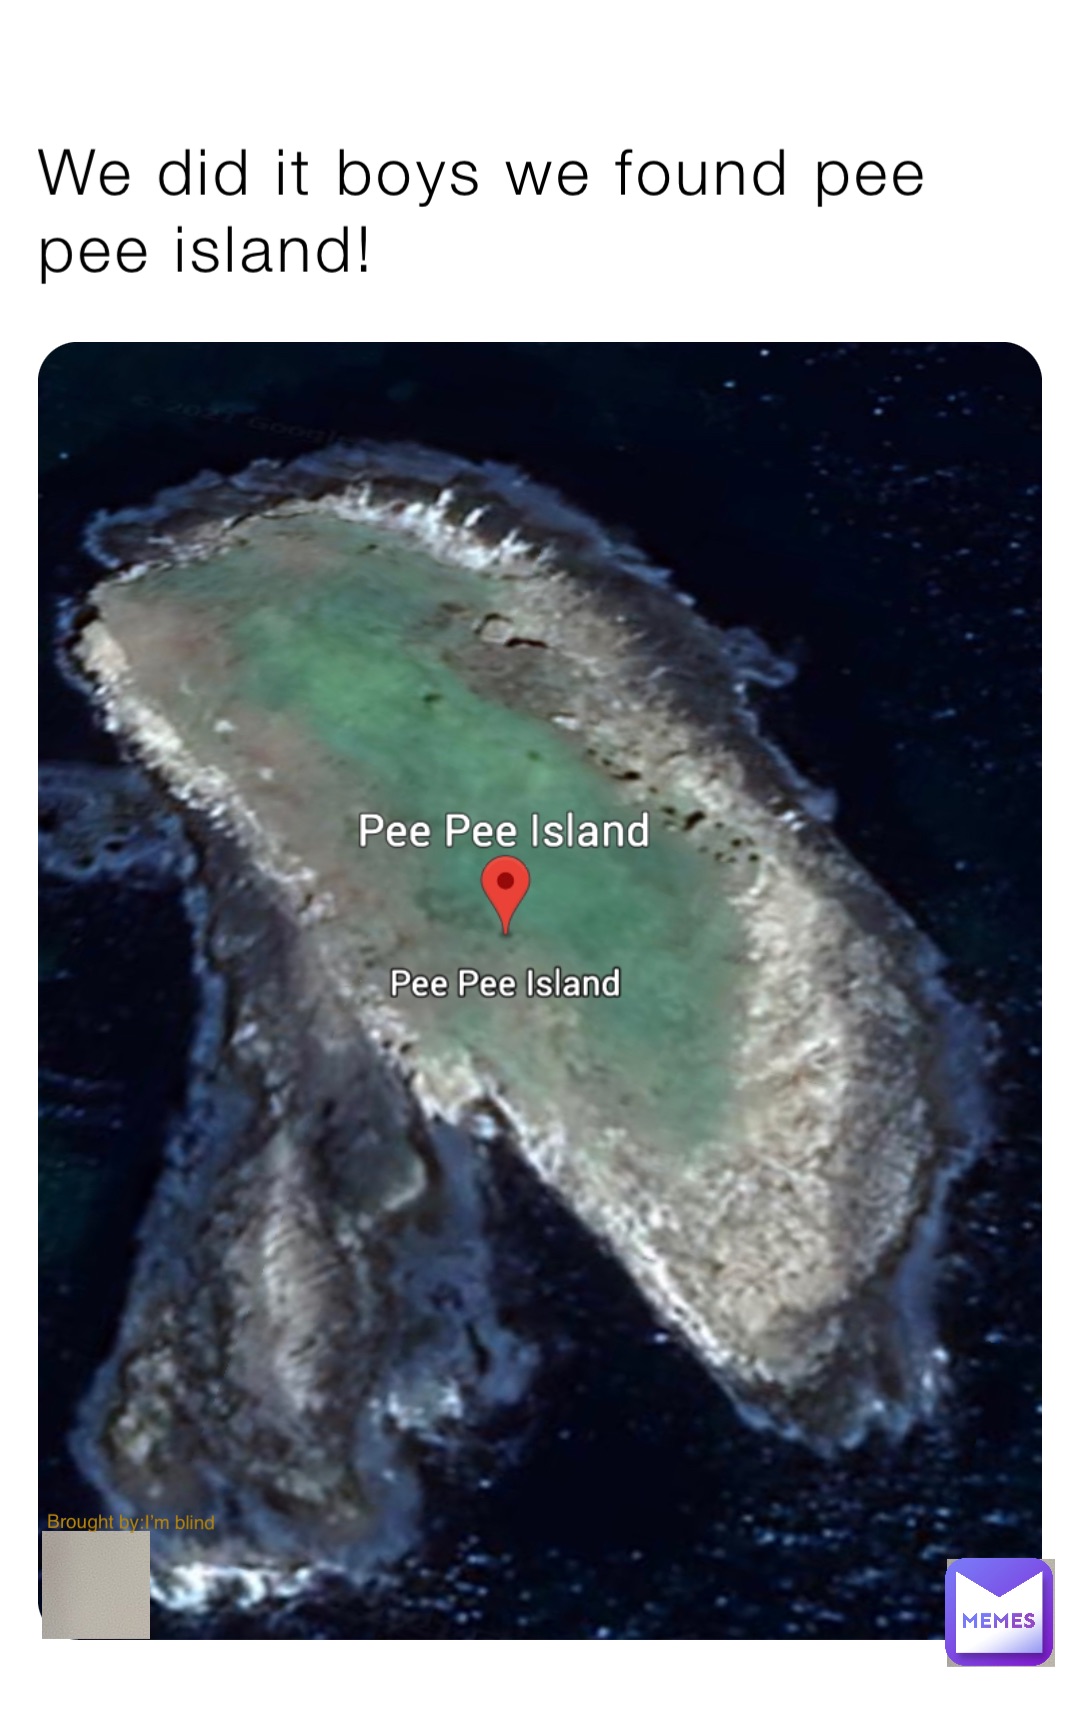 Pee pee island